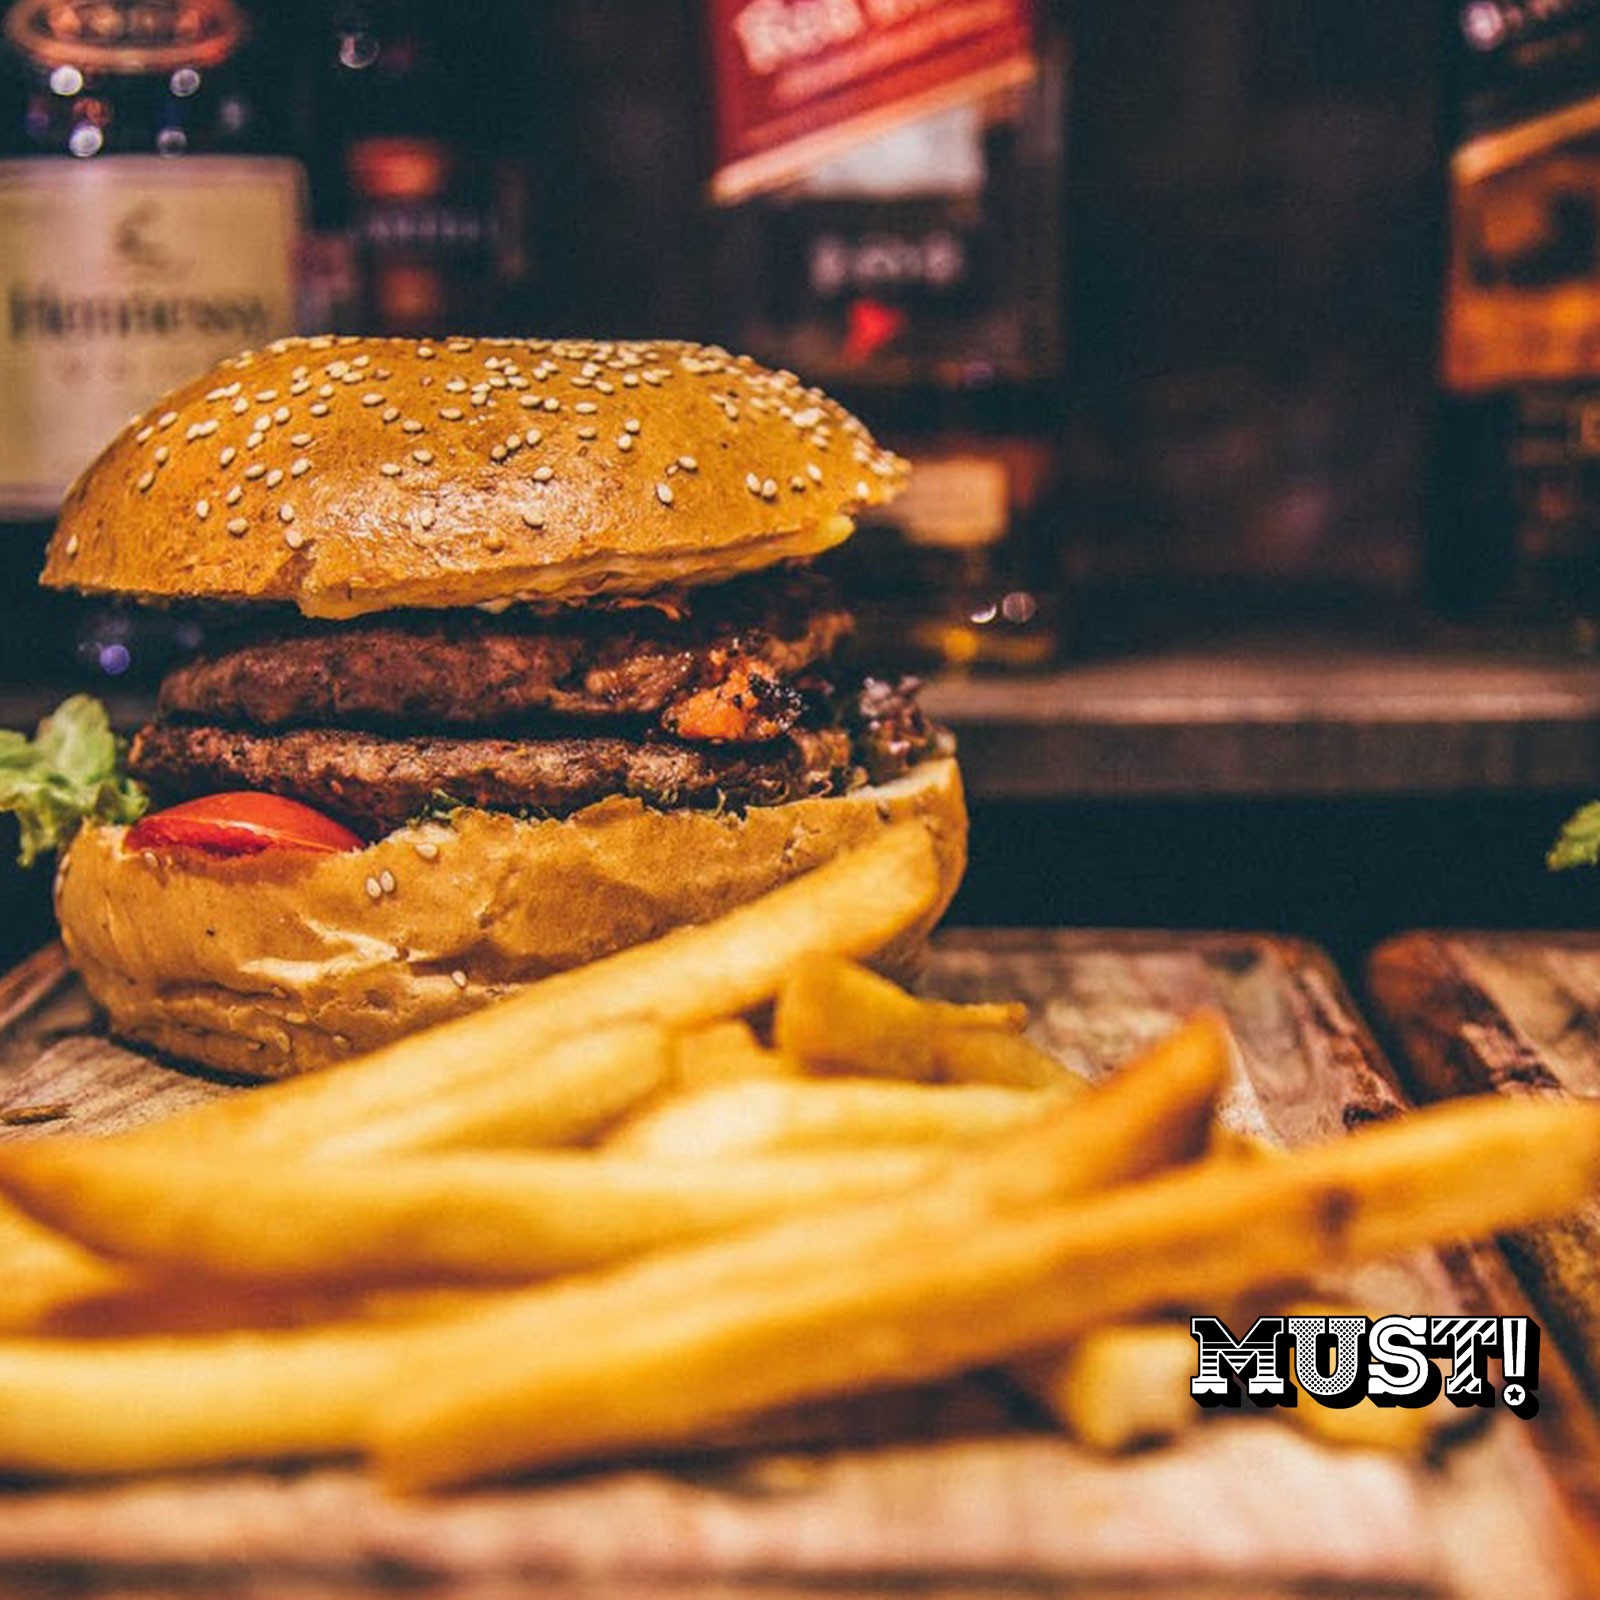 Burger MUST ! available to rent / verhuur / location at 50.8 Studio • Belgïe, Belgique, Belgium, Catering, Huur, Location, Louer, Only in, Photo, Rent, Studio, Verhuur, Video